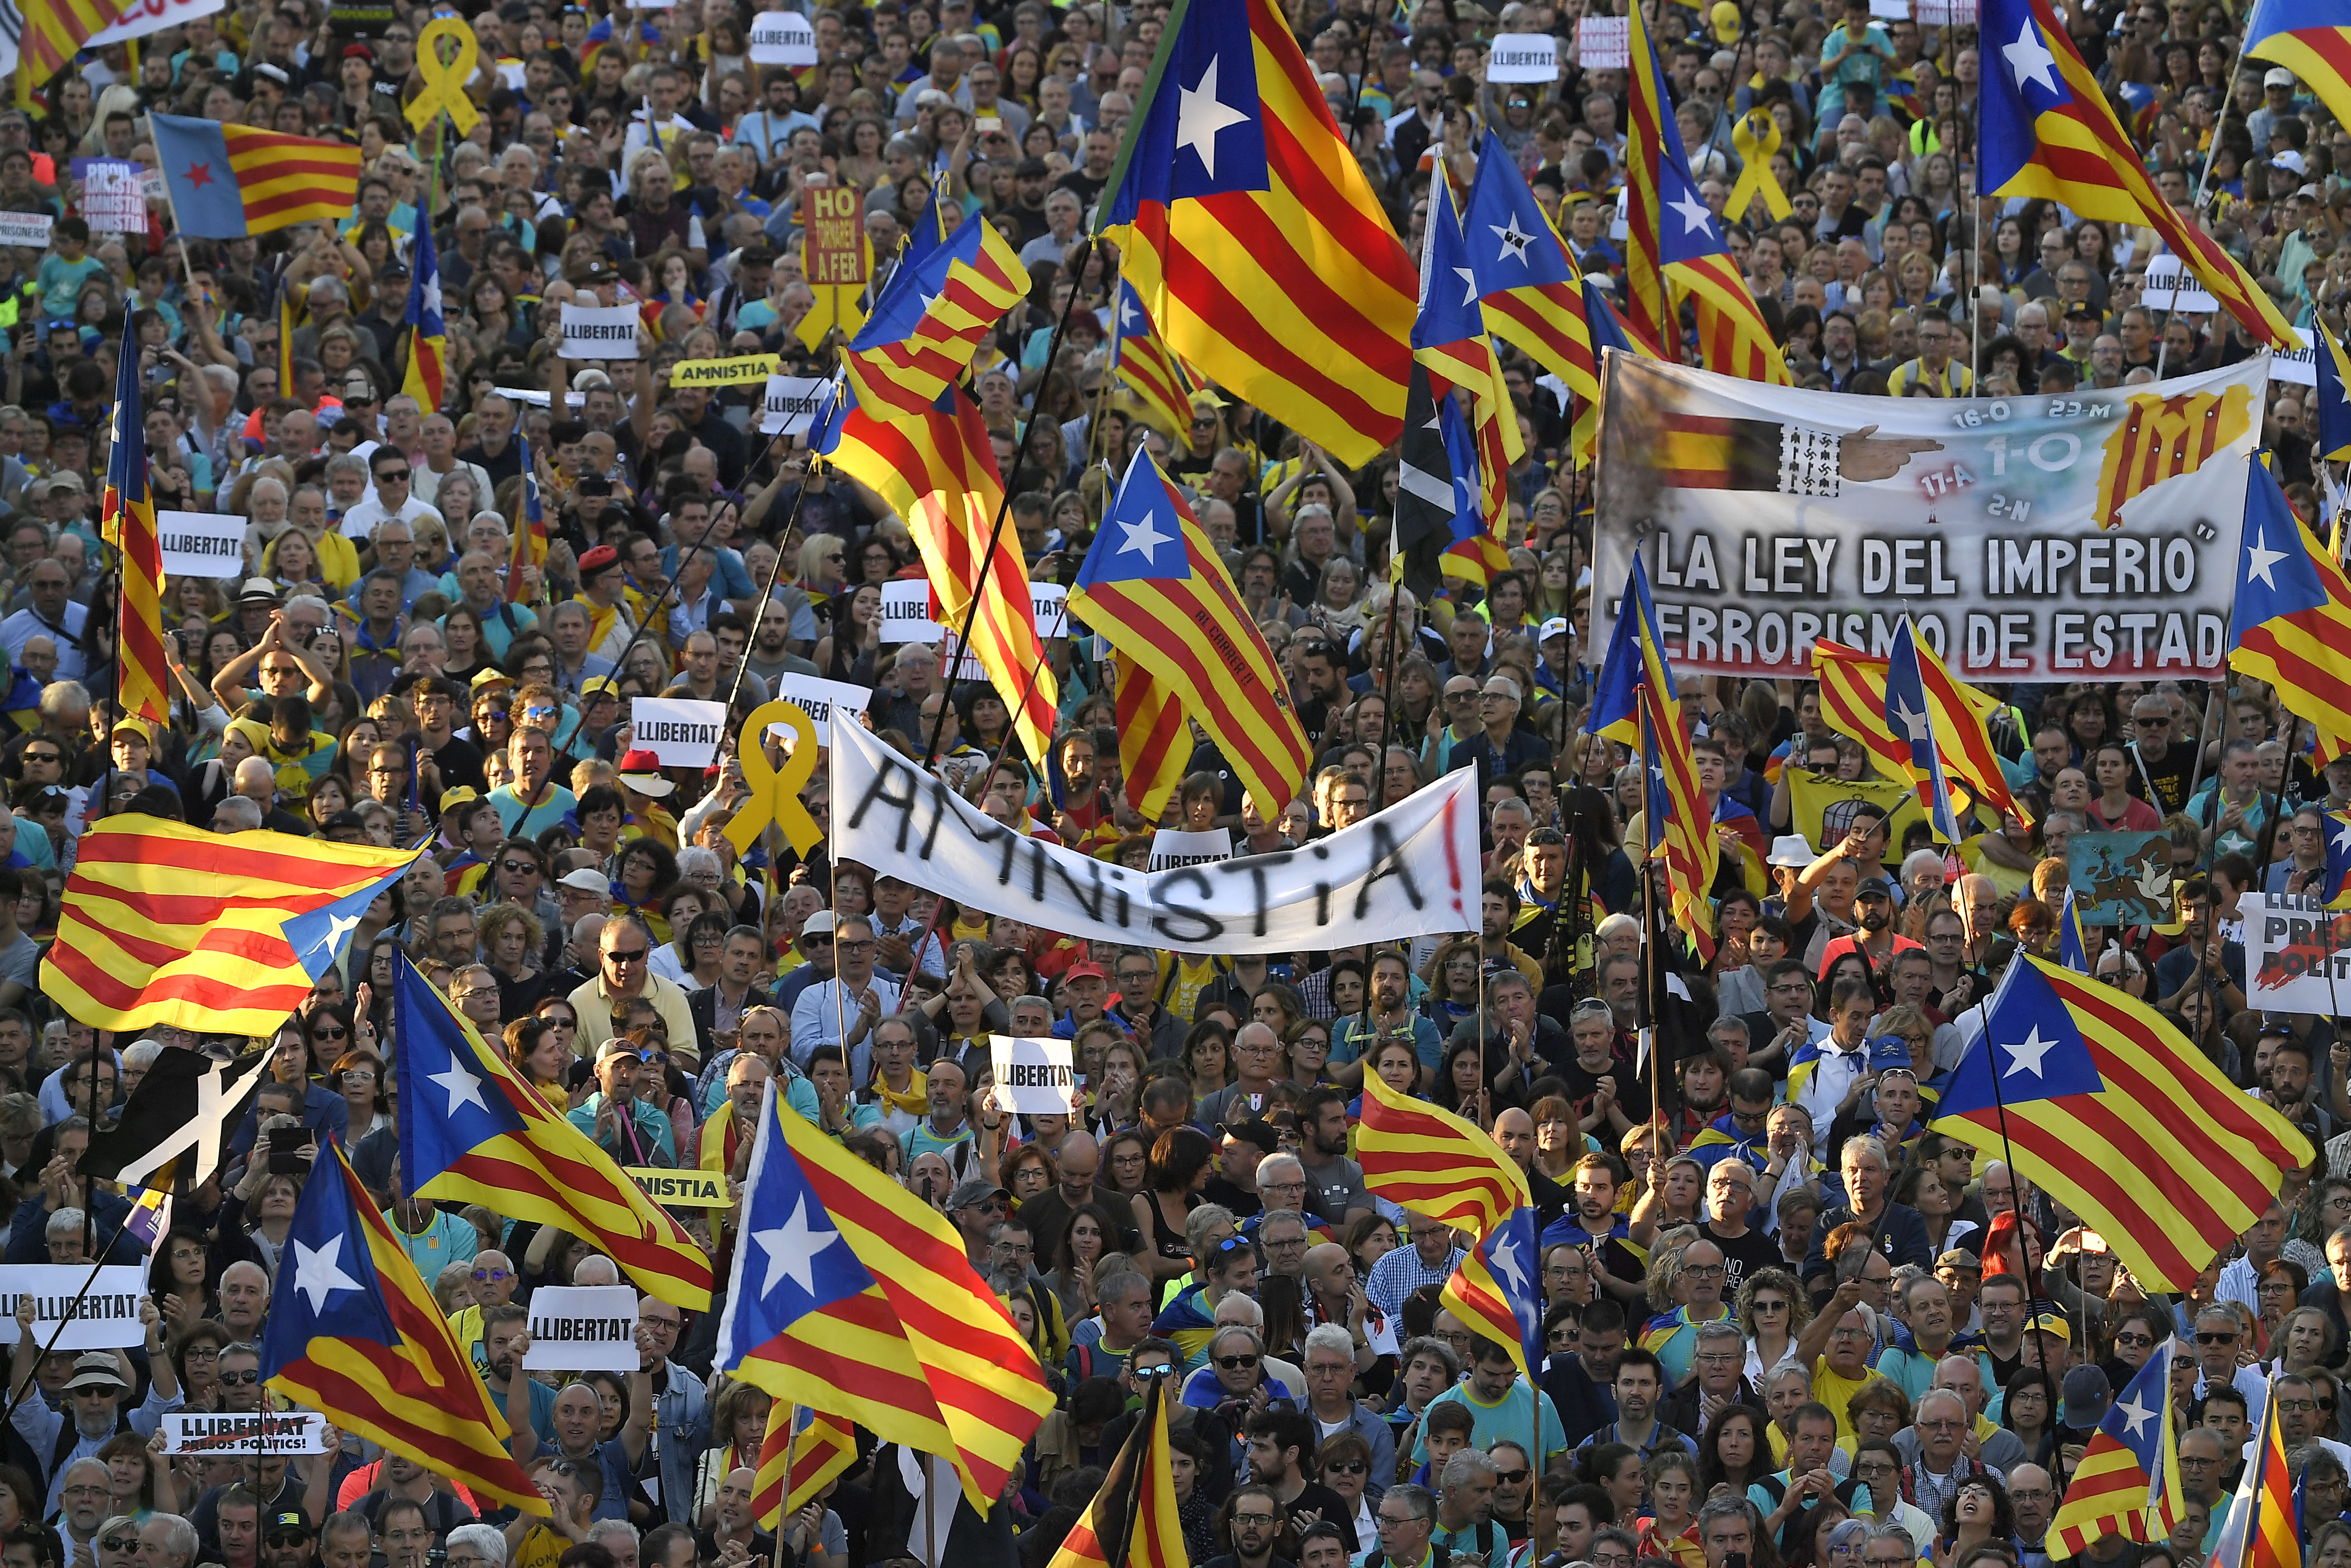 La masiva manifestación separatista en Barcelona finalizó con altercados (FOTOS)